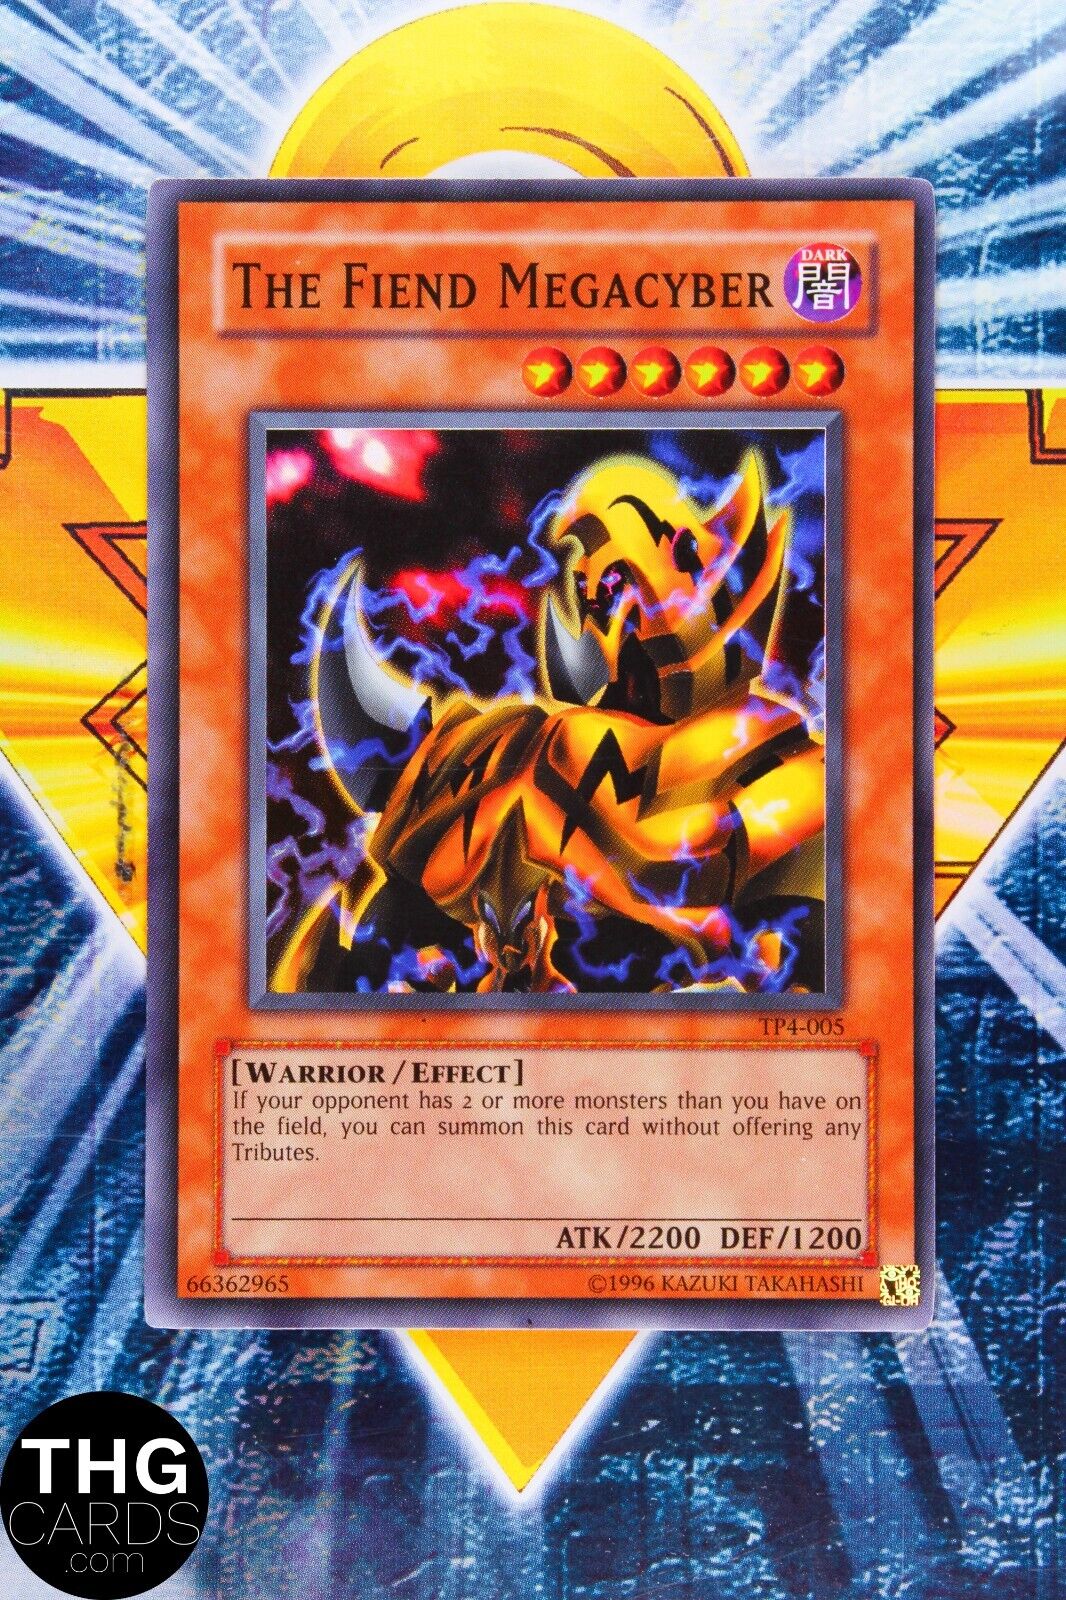 The Fiend Megacyber TP4-005 Super Rare Yugioh Card